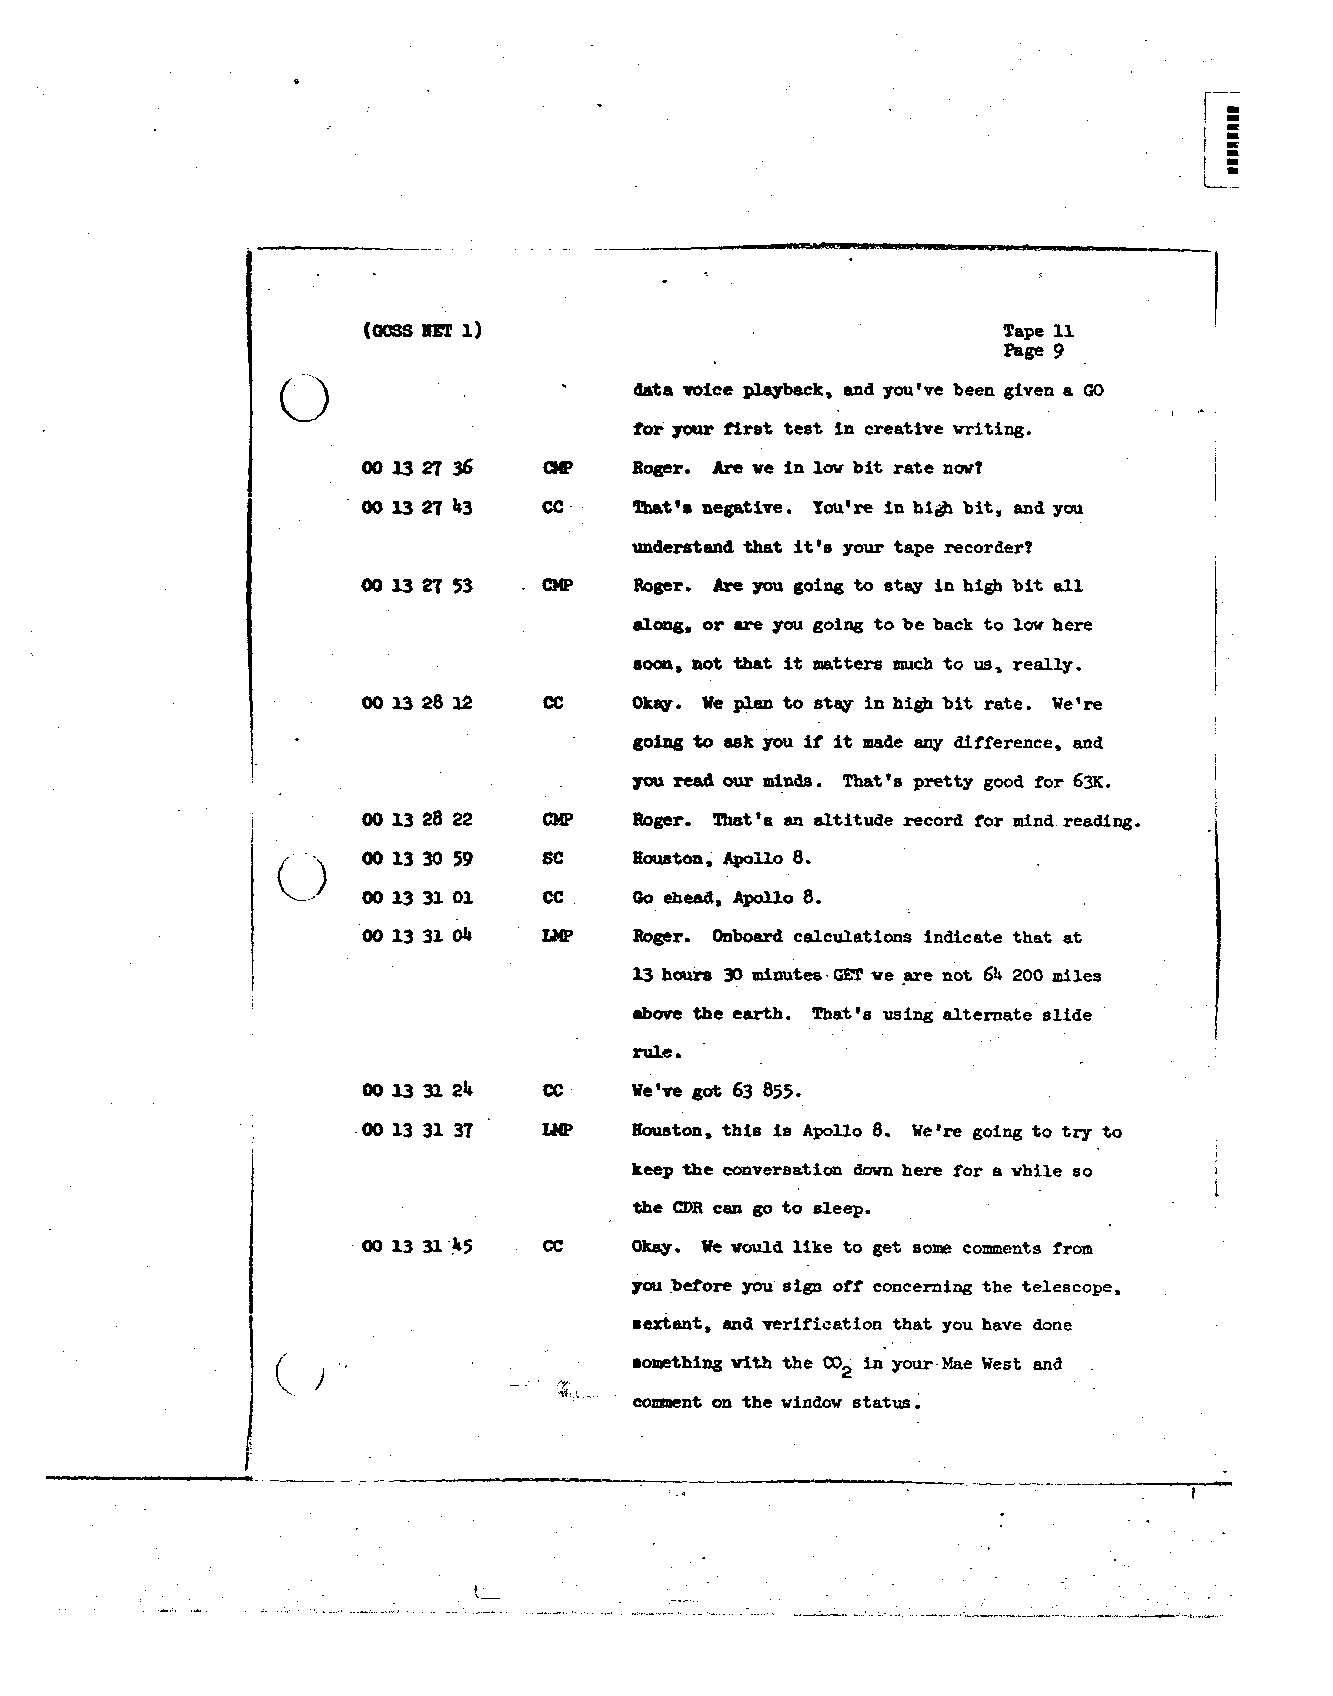 Page 111 of Apollo 8’s original transcript